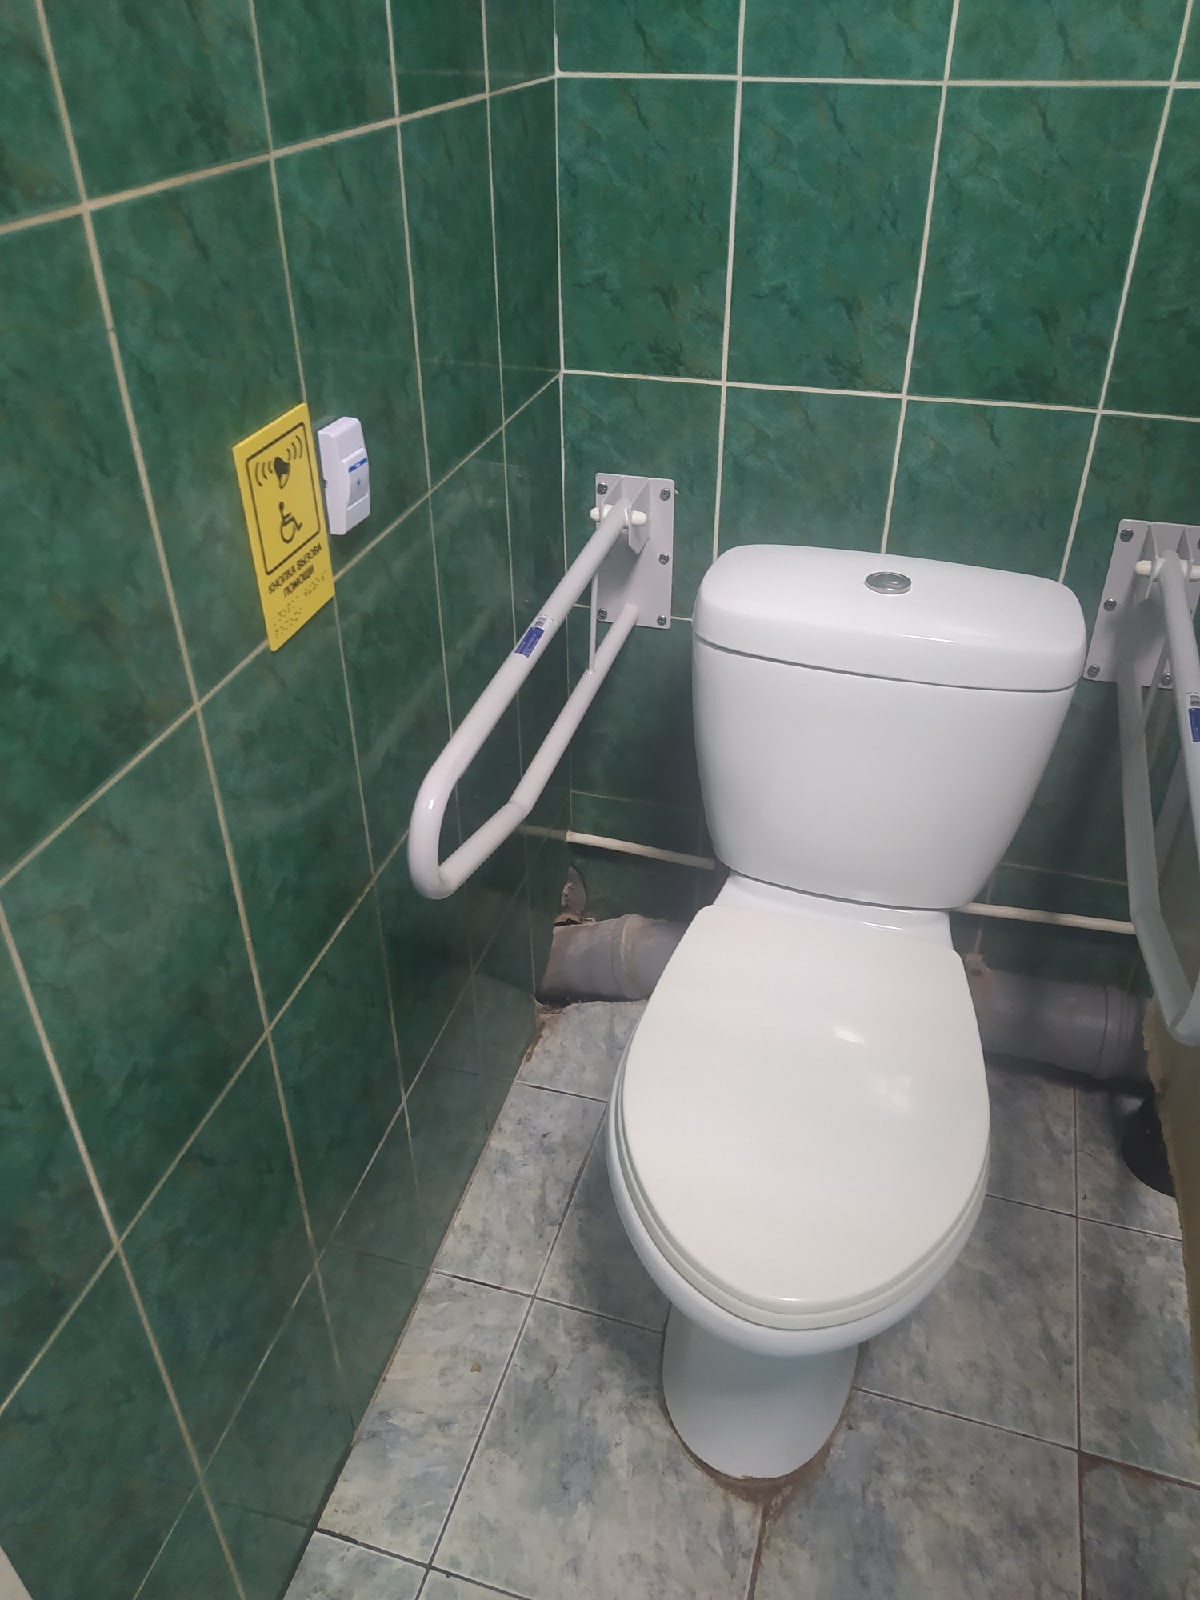 Специальная мужская туалетная комната с поручнями и кнопкой вызова помощи со шрифтом Брайля  для инвалидов